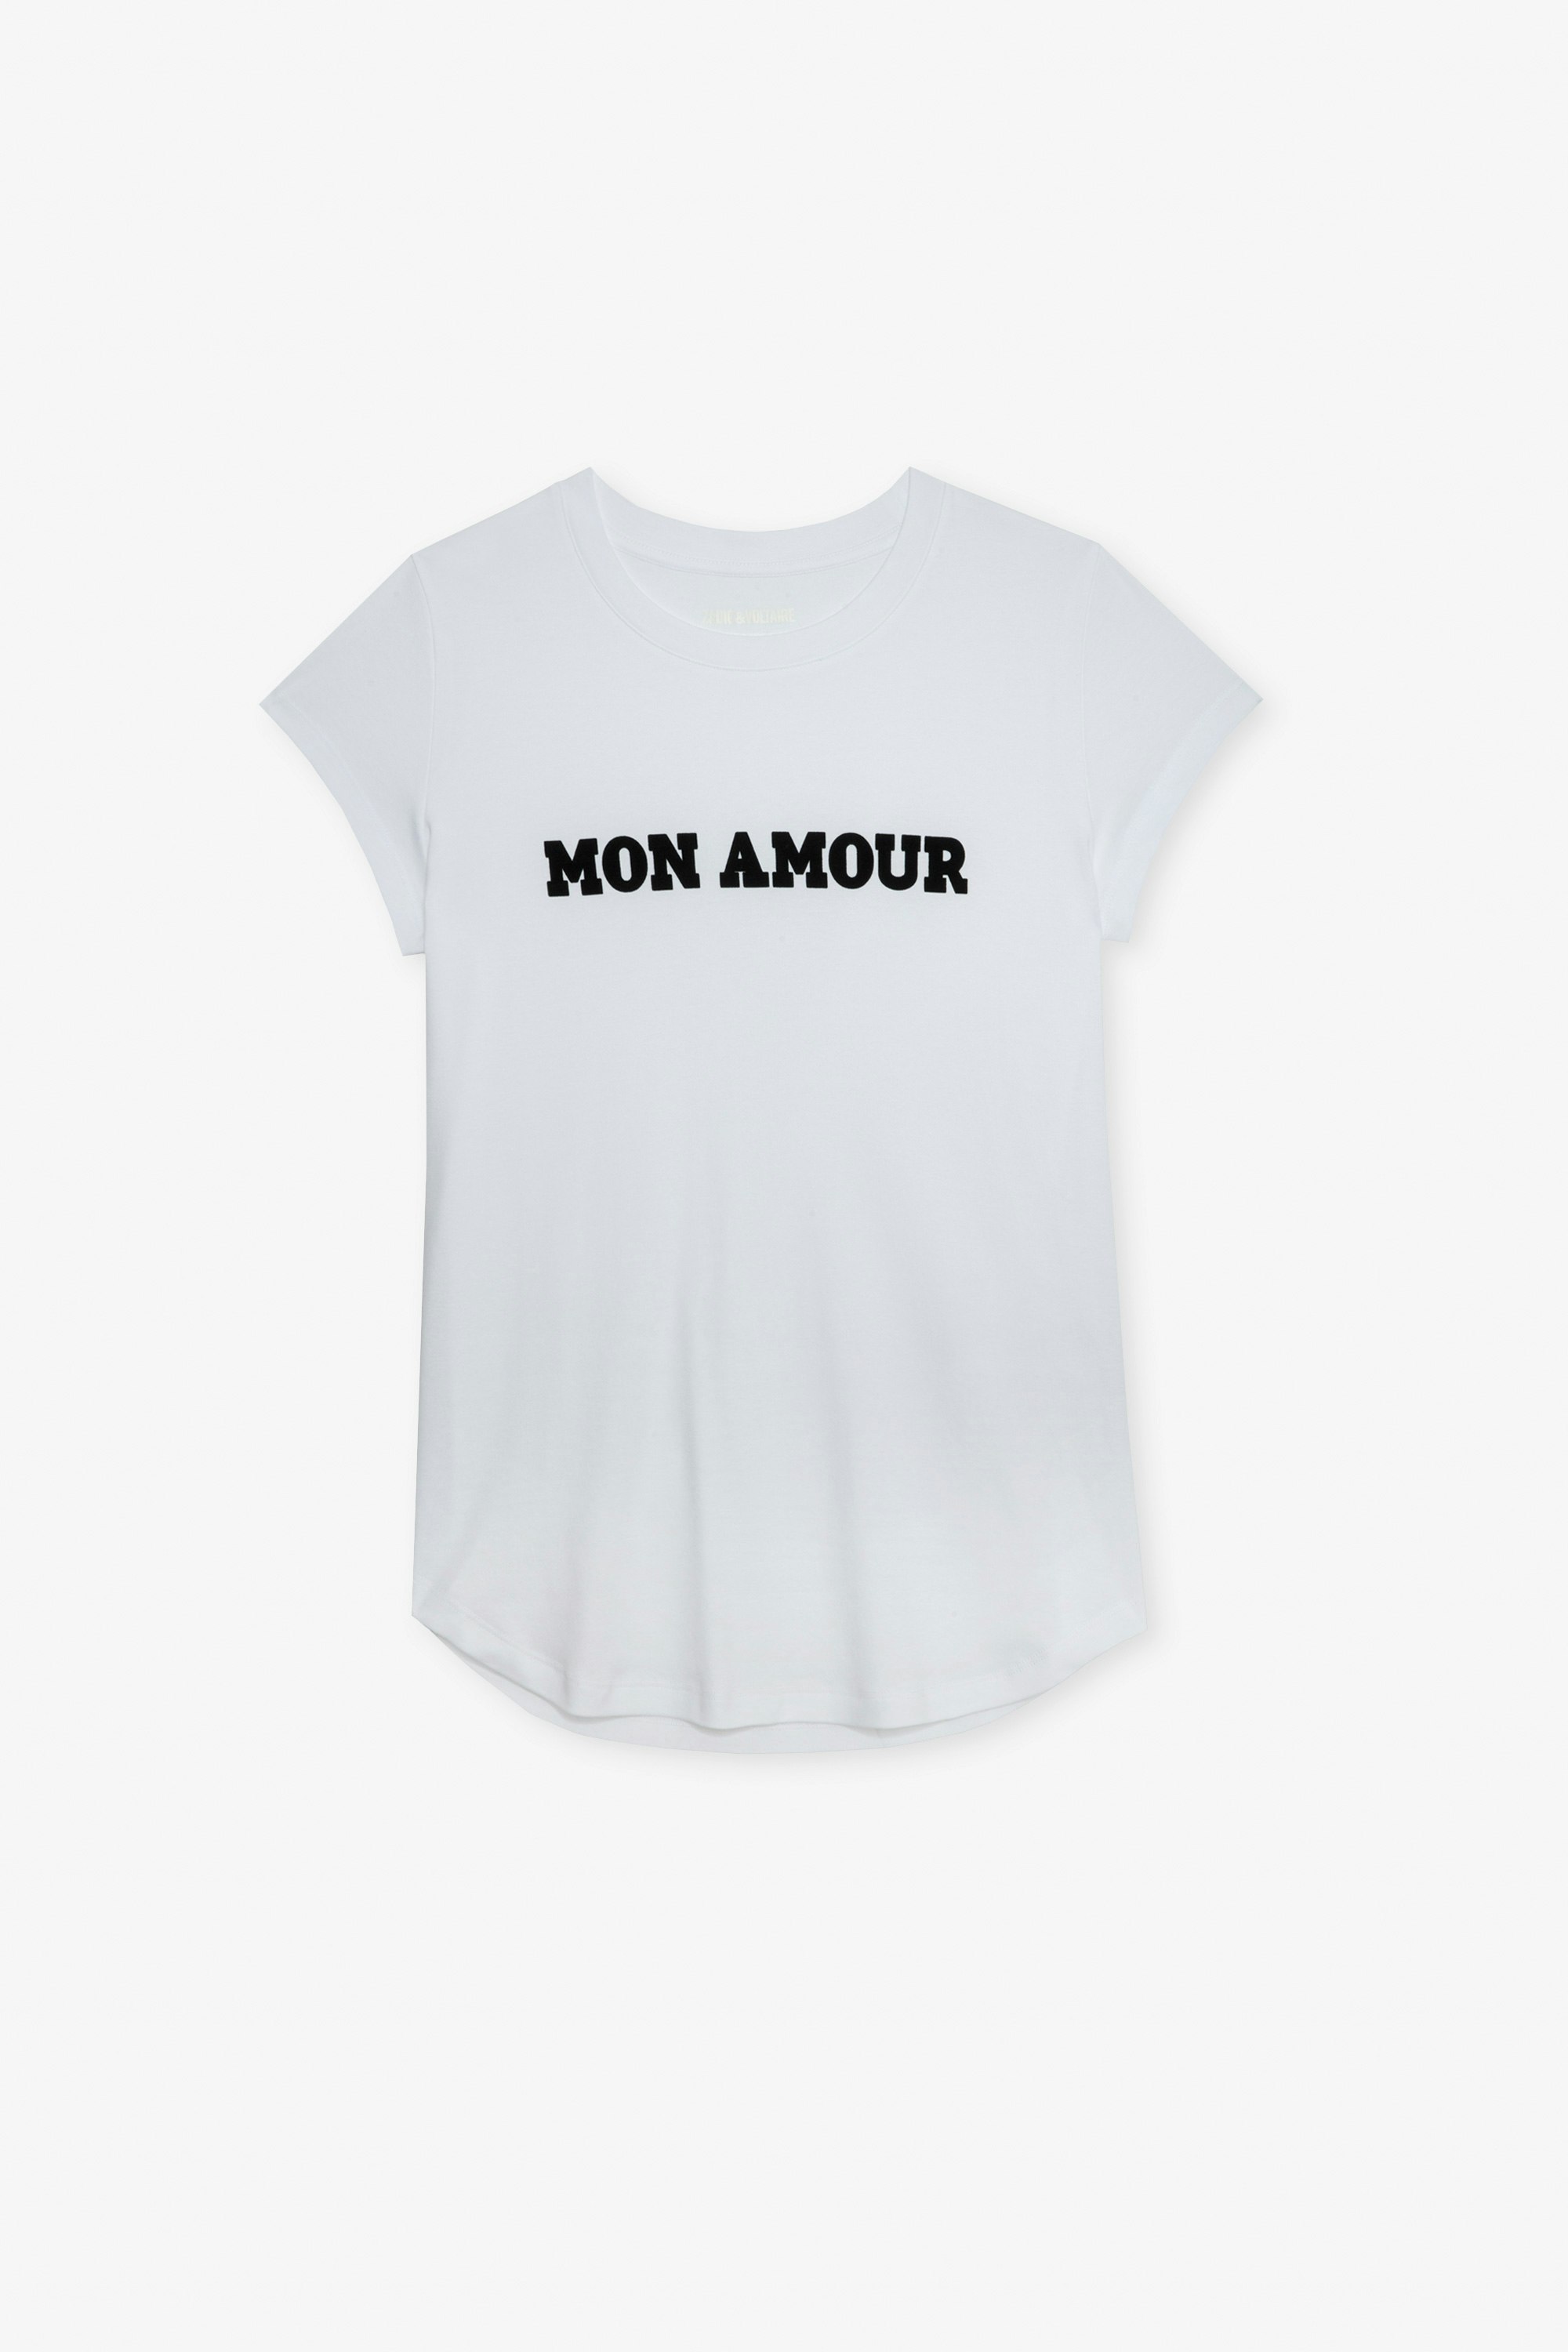 T-shirt Woop Mon Amour T-shirt en coton blanc orné d'une inscription "Mon amour".